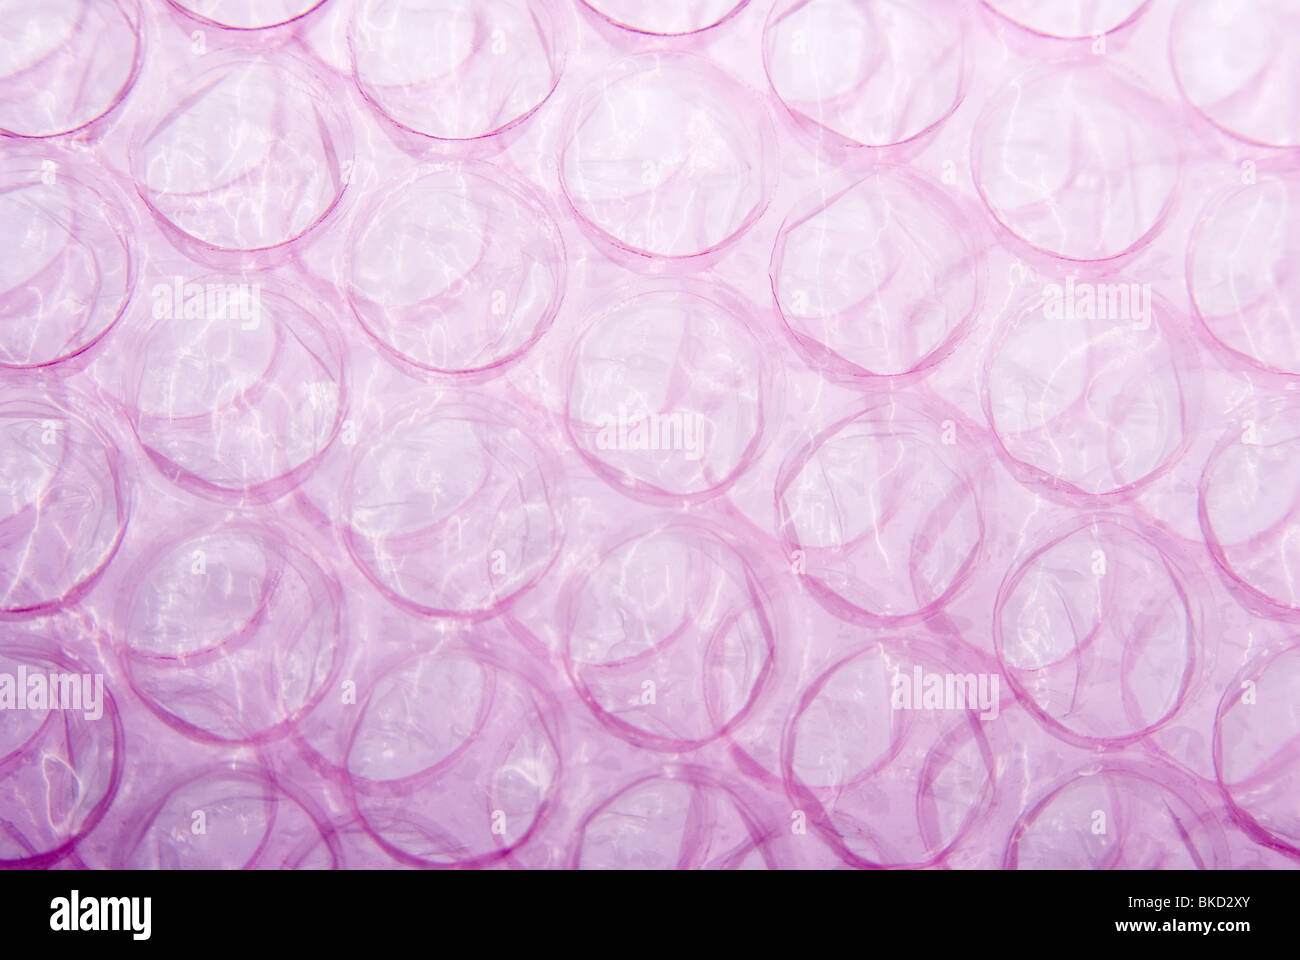 Premium Photo  Pink plastic wrap air bubble texture background